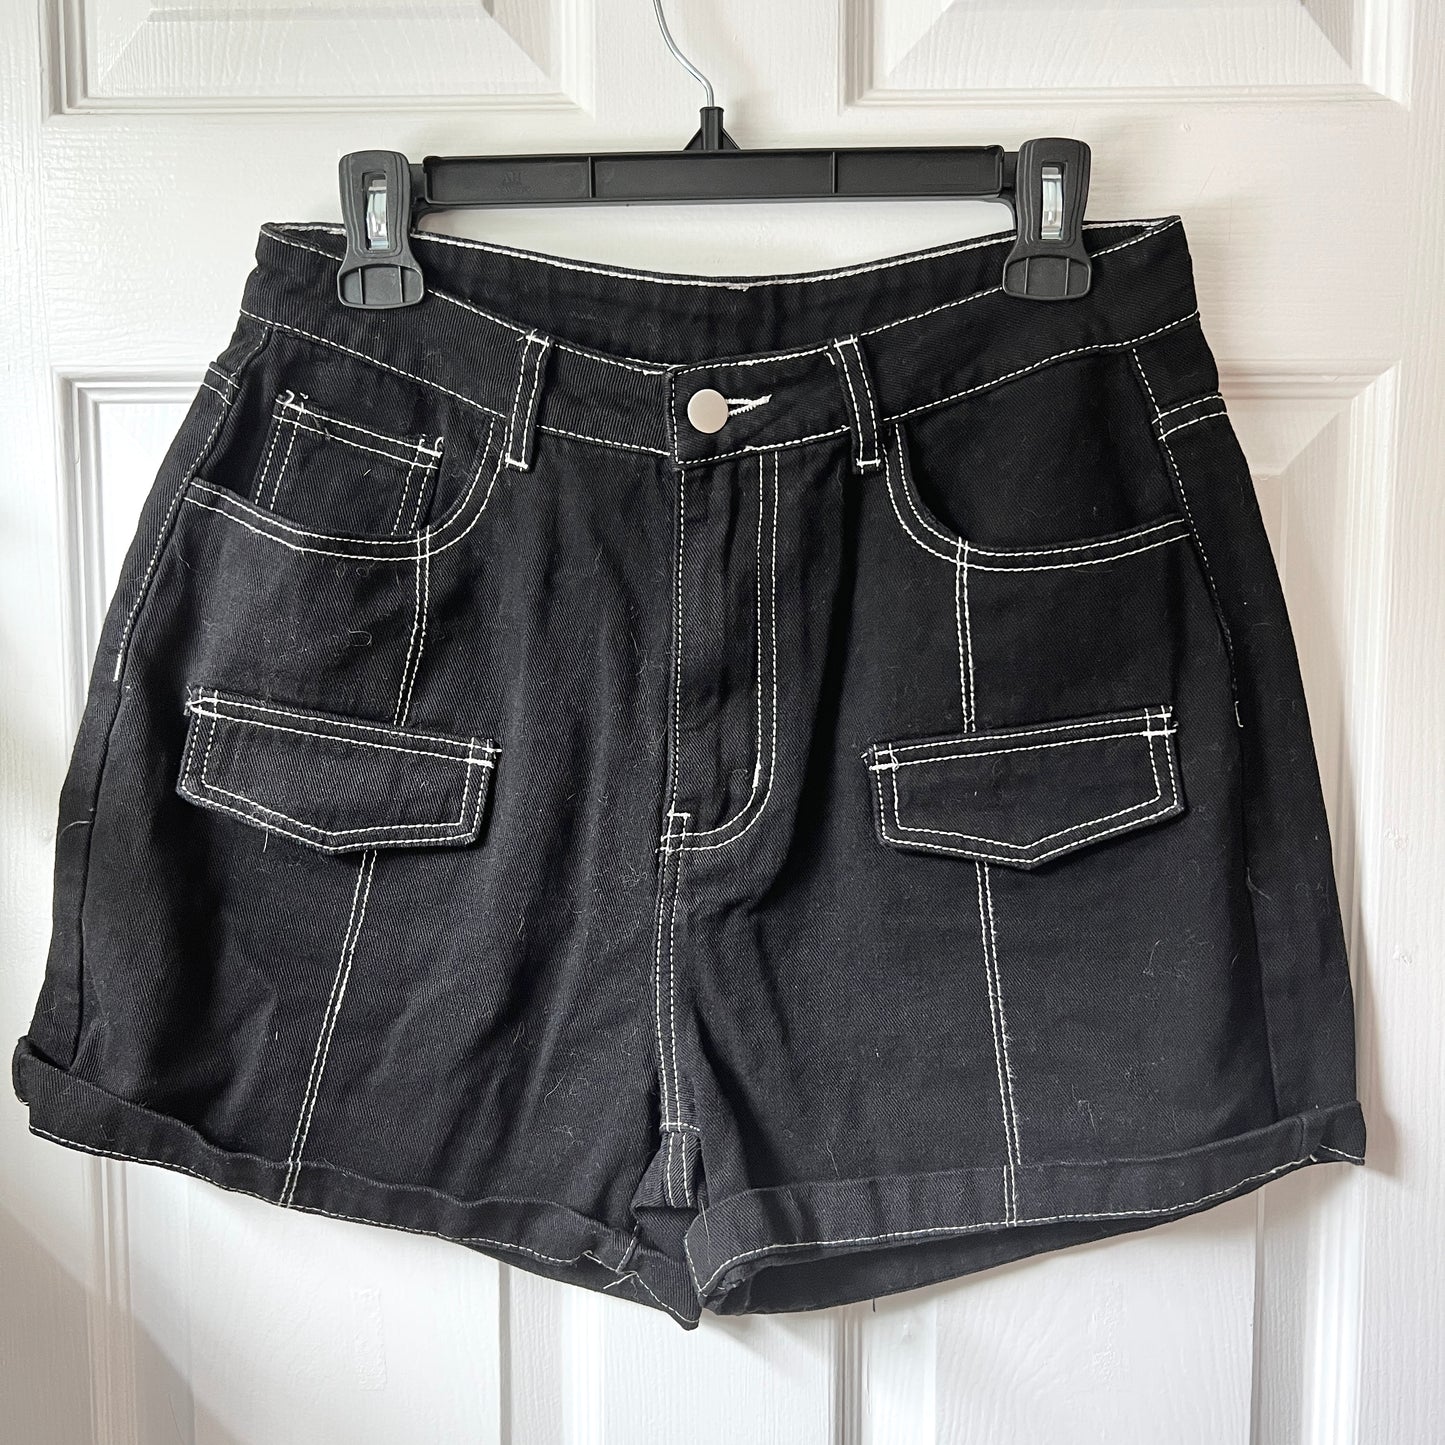 Teal Flower Black Denim Shorts (Size L)